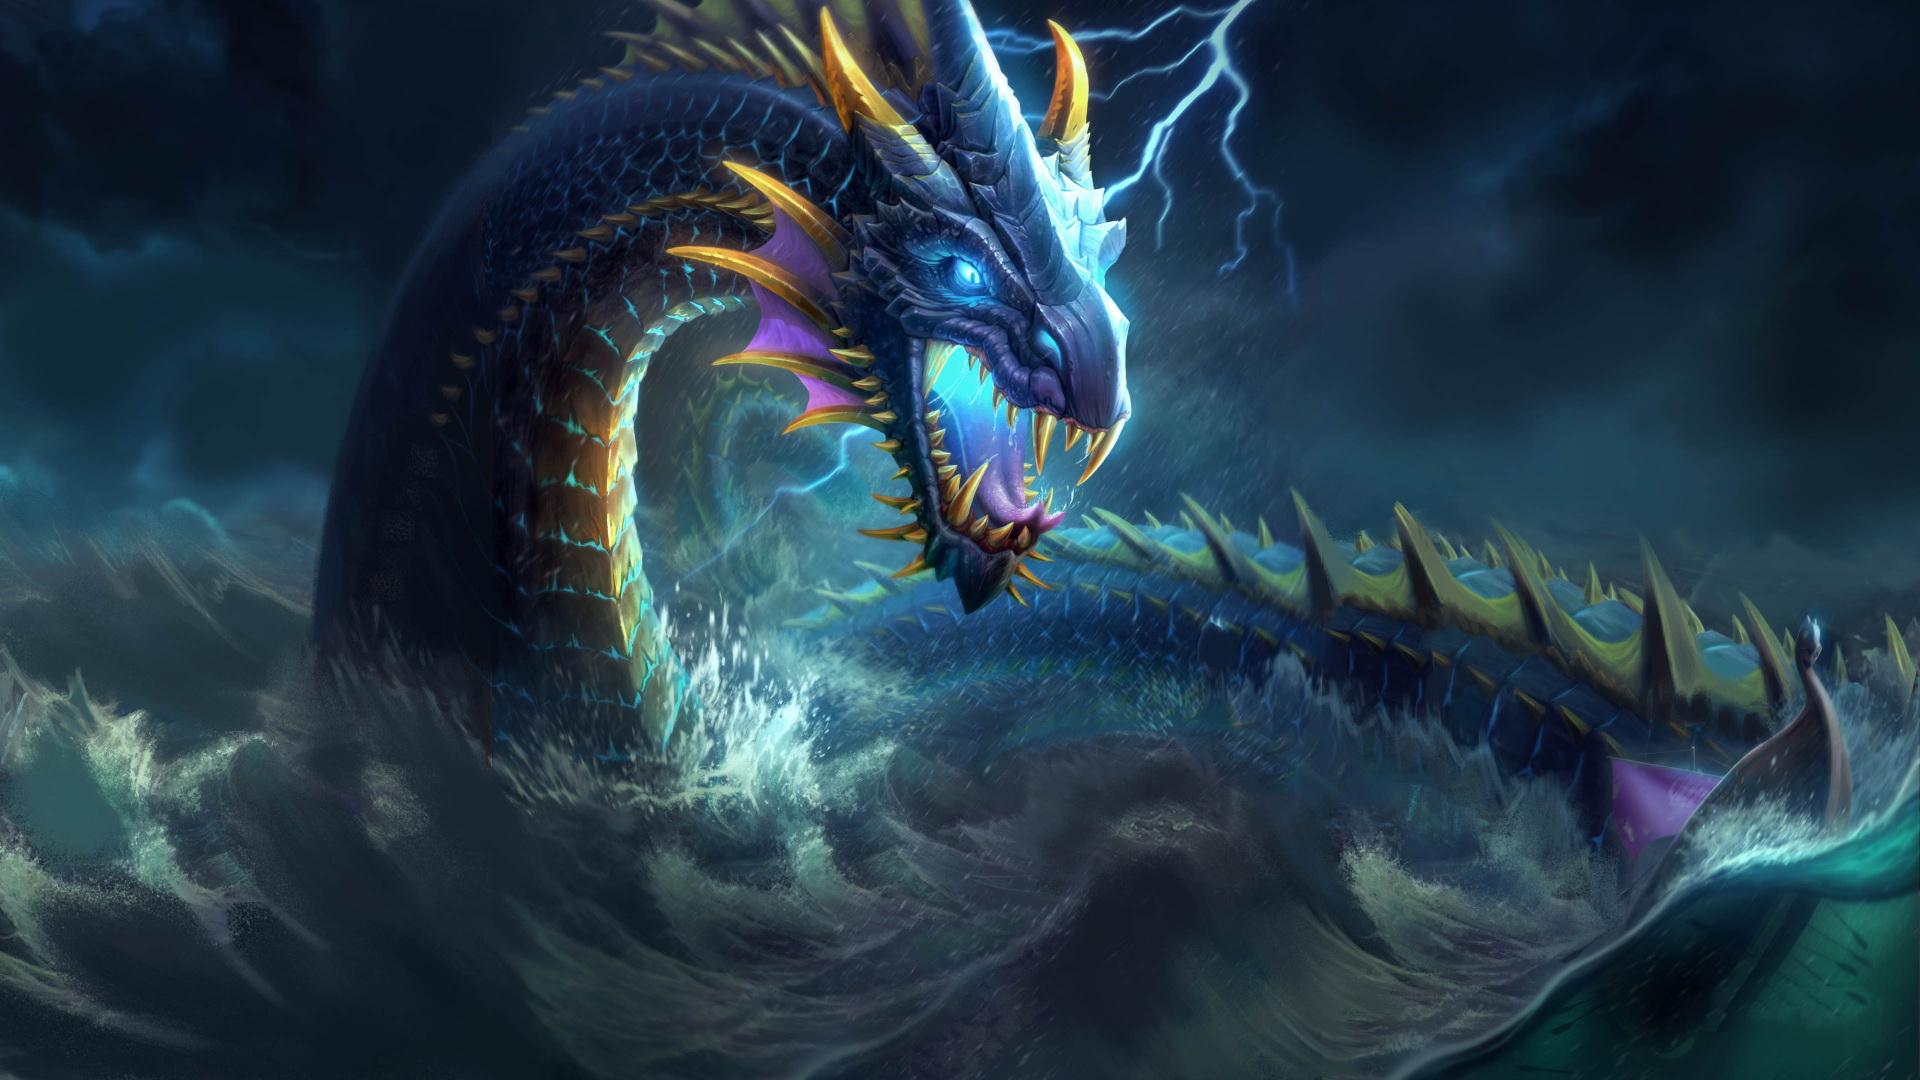 Dragon Beautiful Fantasy Creature Artwork Wallpapers 